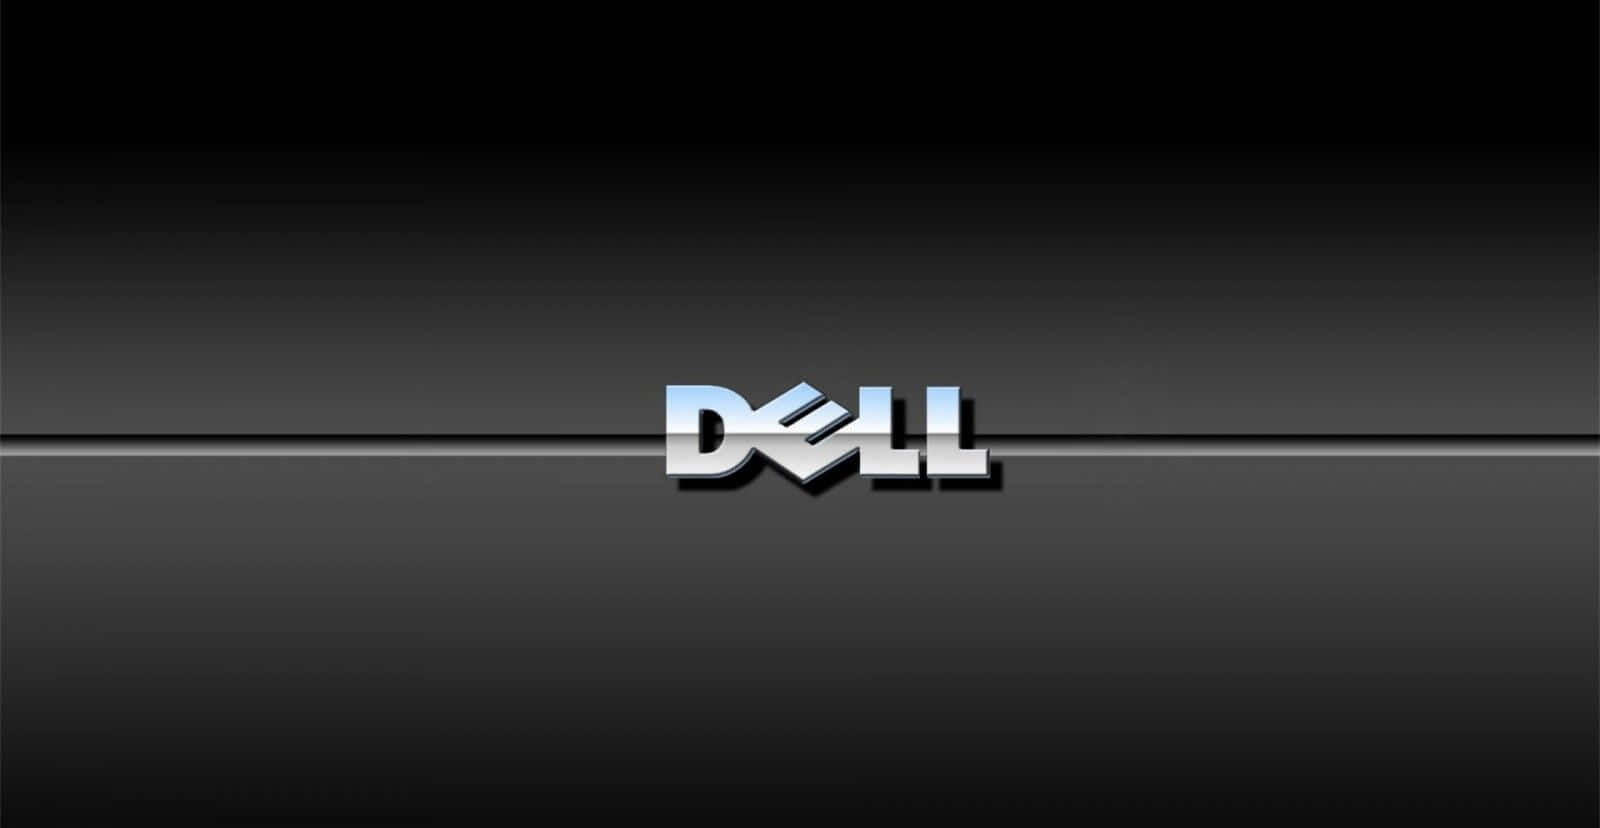 Låsop For Dine Muligheder Og Udfold Dit Erhvervspotentiale Med Dell-teknologi.